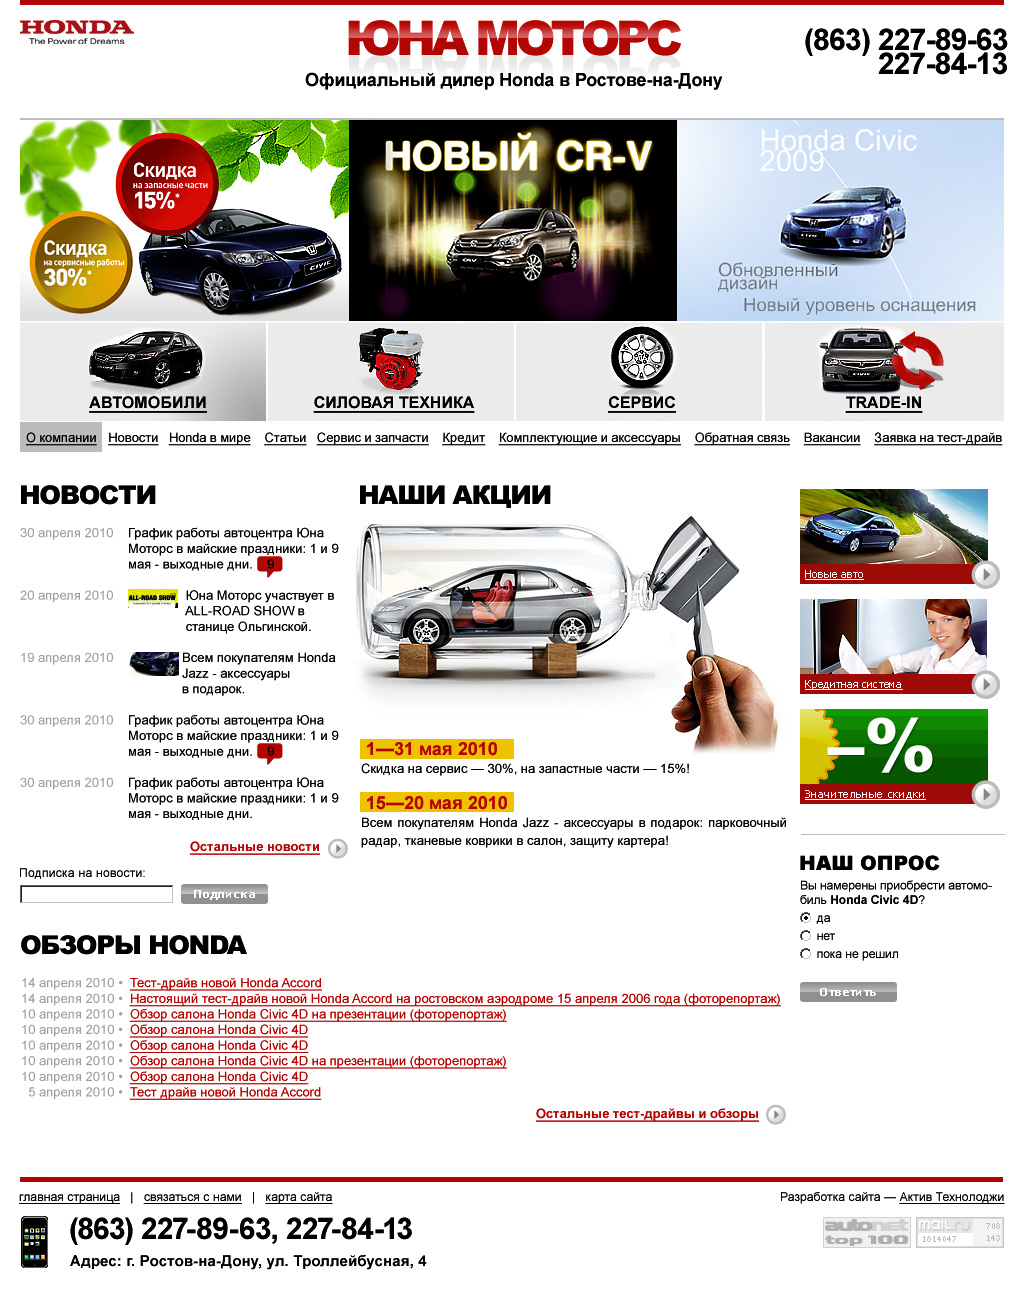 Редизайн сайта официального дилера Honda в Ростове-на-Дону - ЮНА Моторс